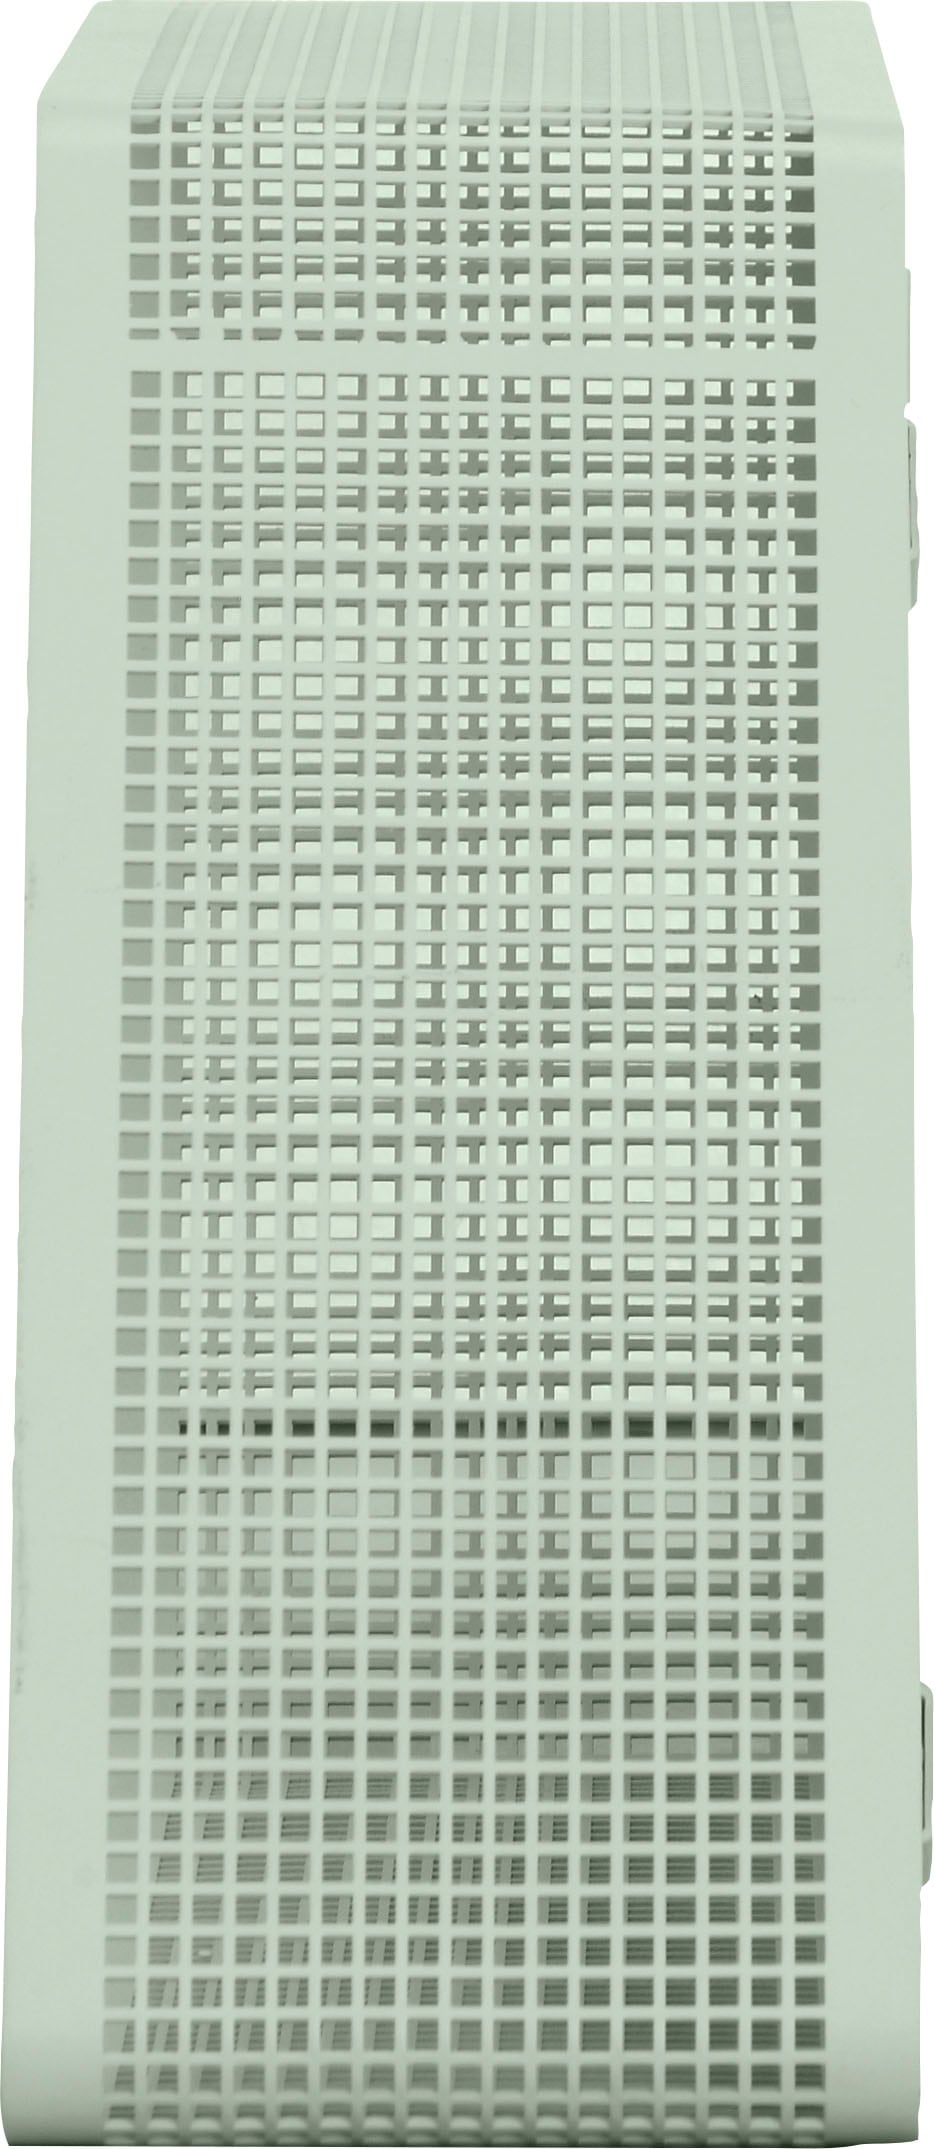 Regal »Crossby«, mit Netzmuster, Breite ca. 56,8 cm, Design by Morten Georgsen